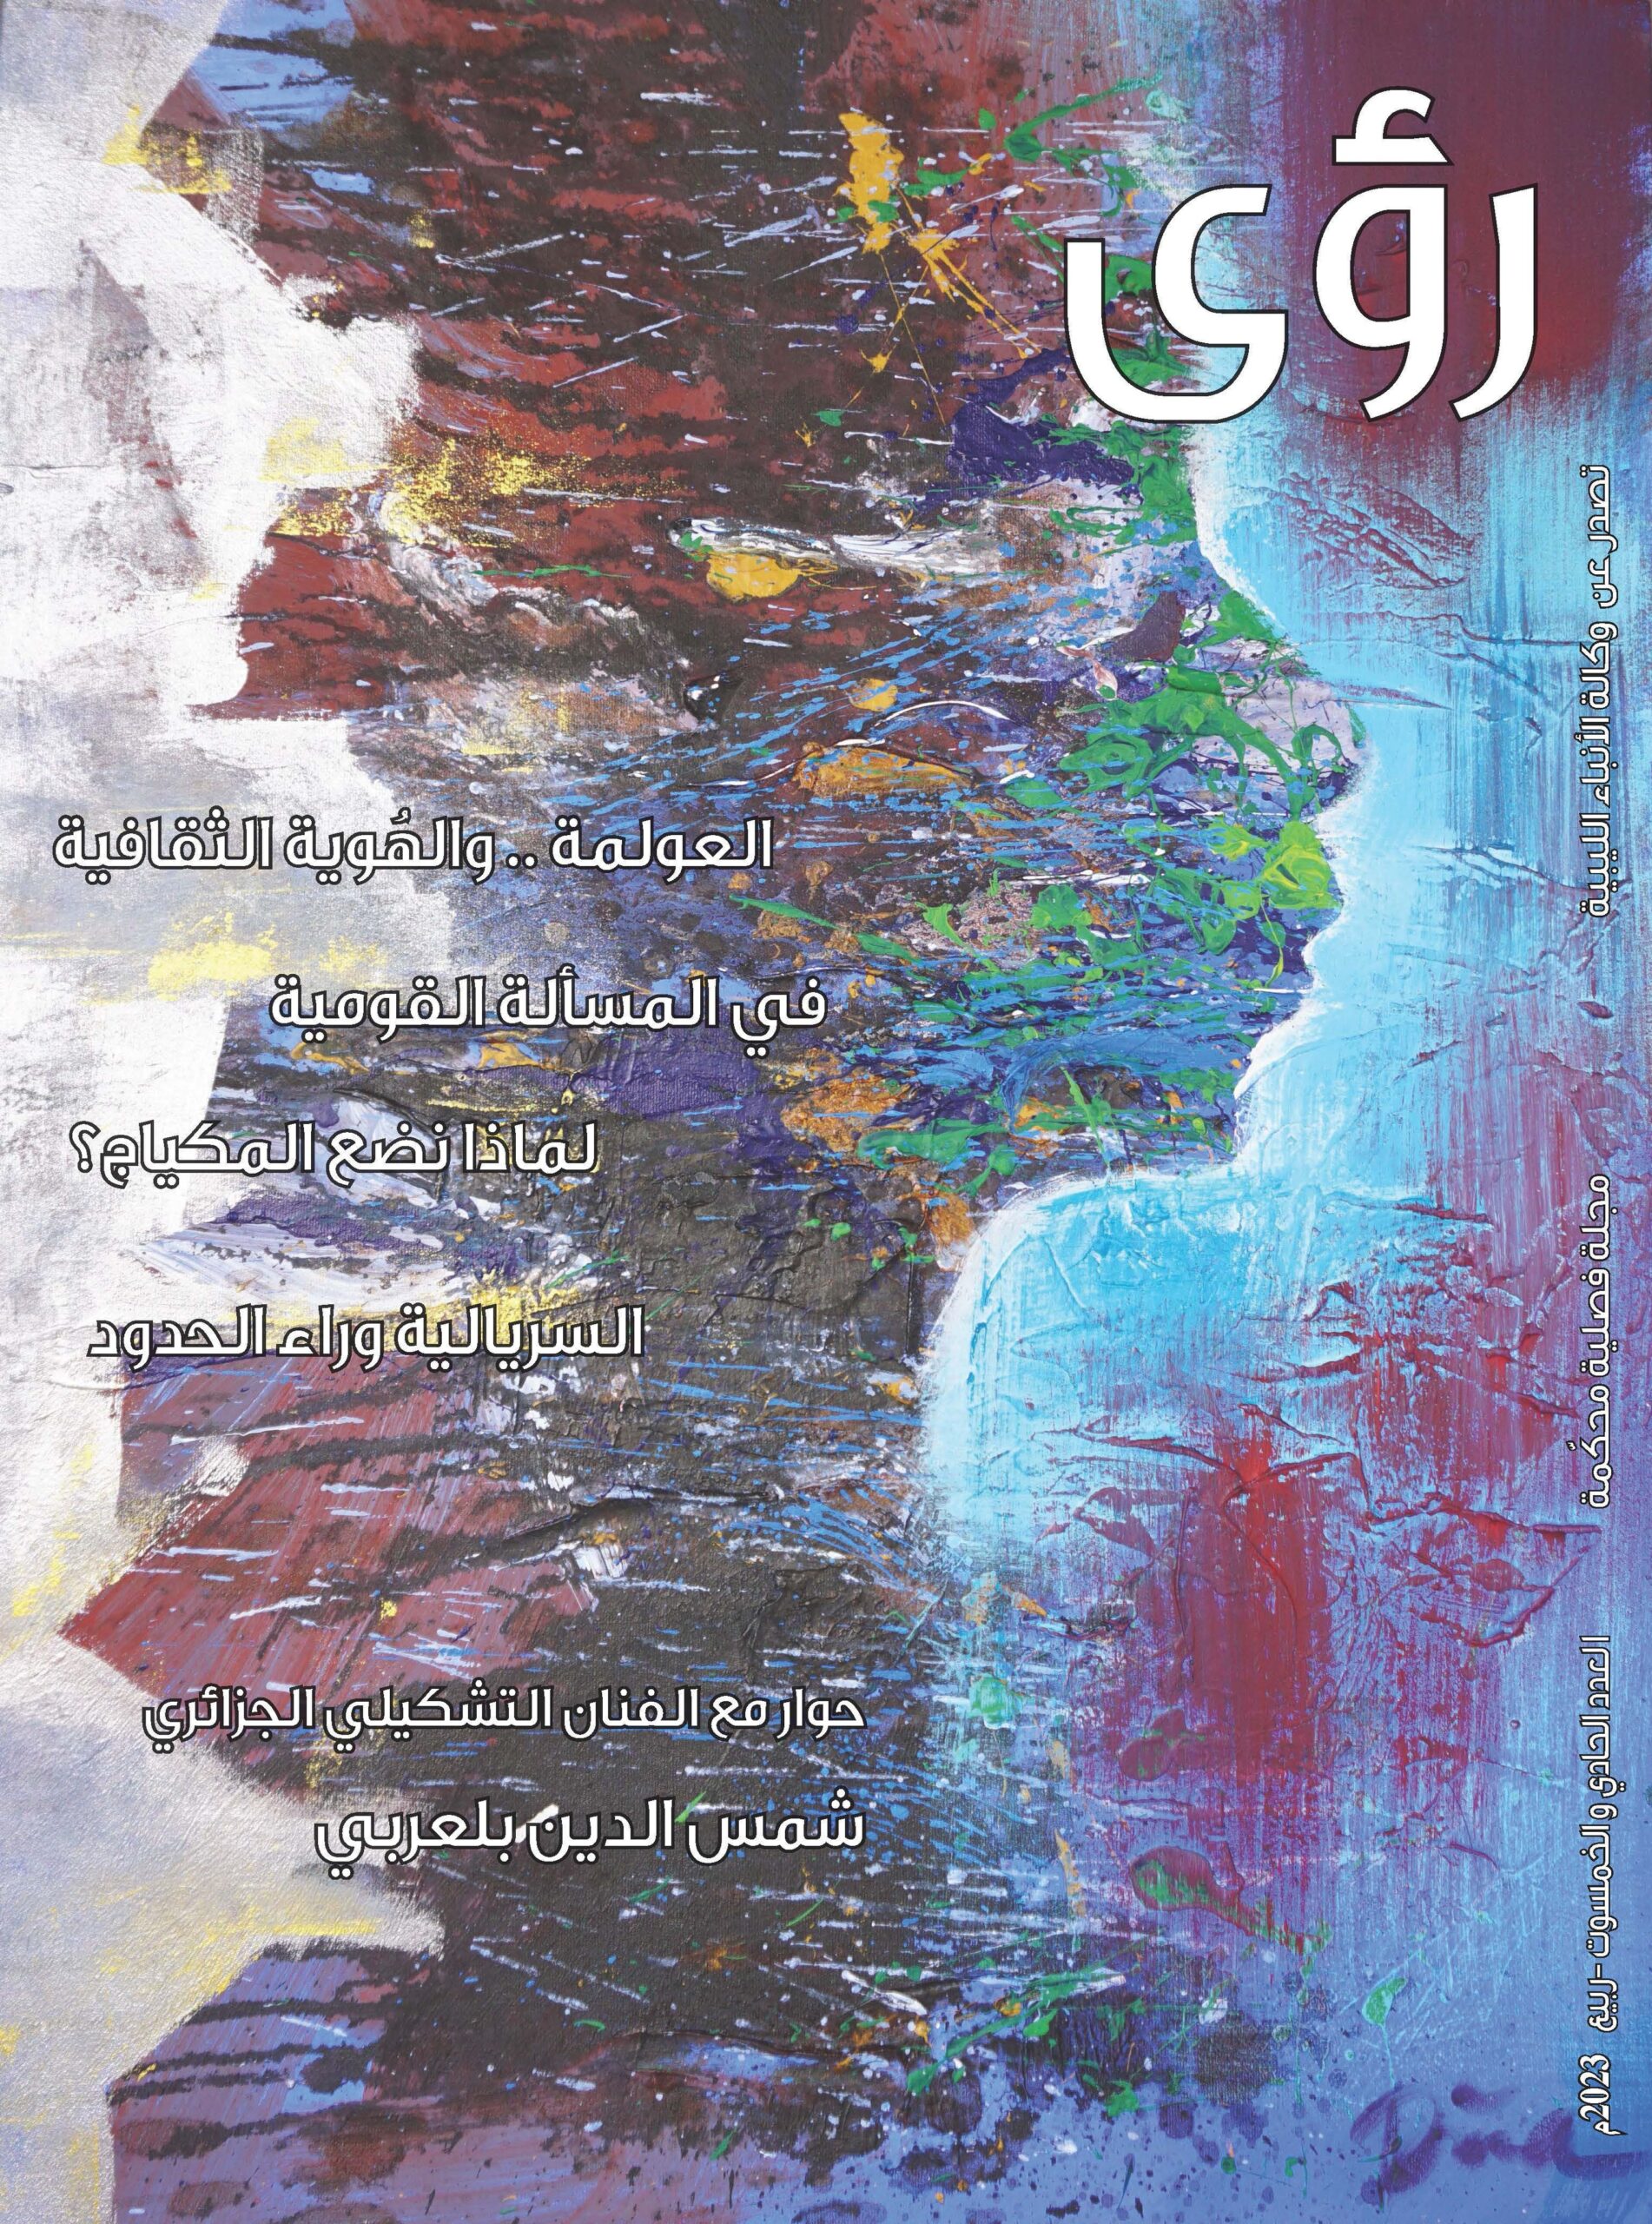 صدور العدد (51) مجلة رؤى الثقافية الصادرة عن وكالة الأنباء الليبية